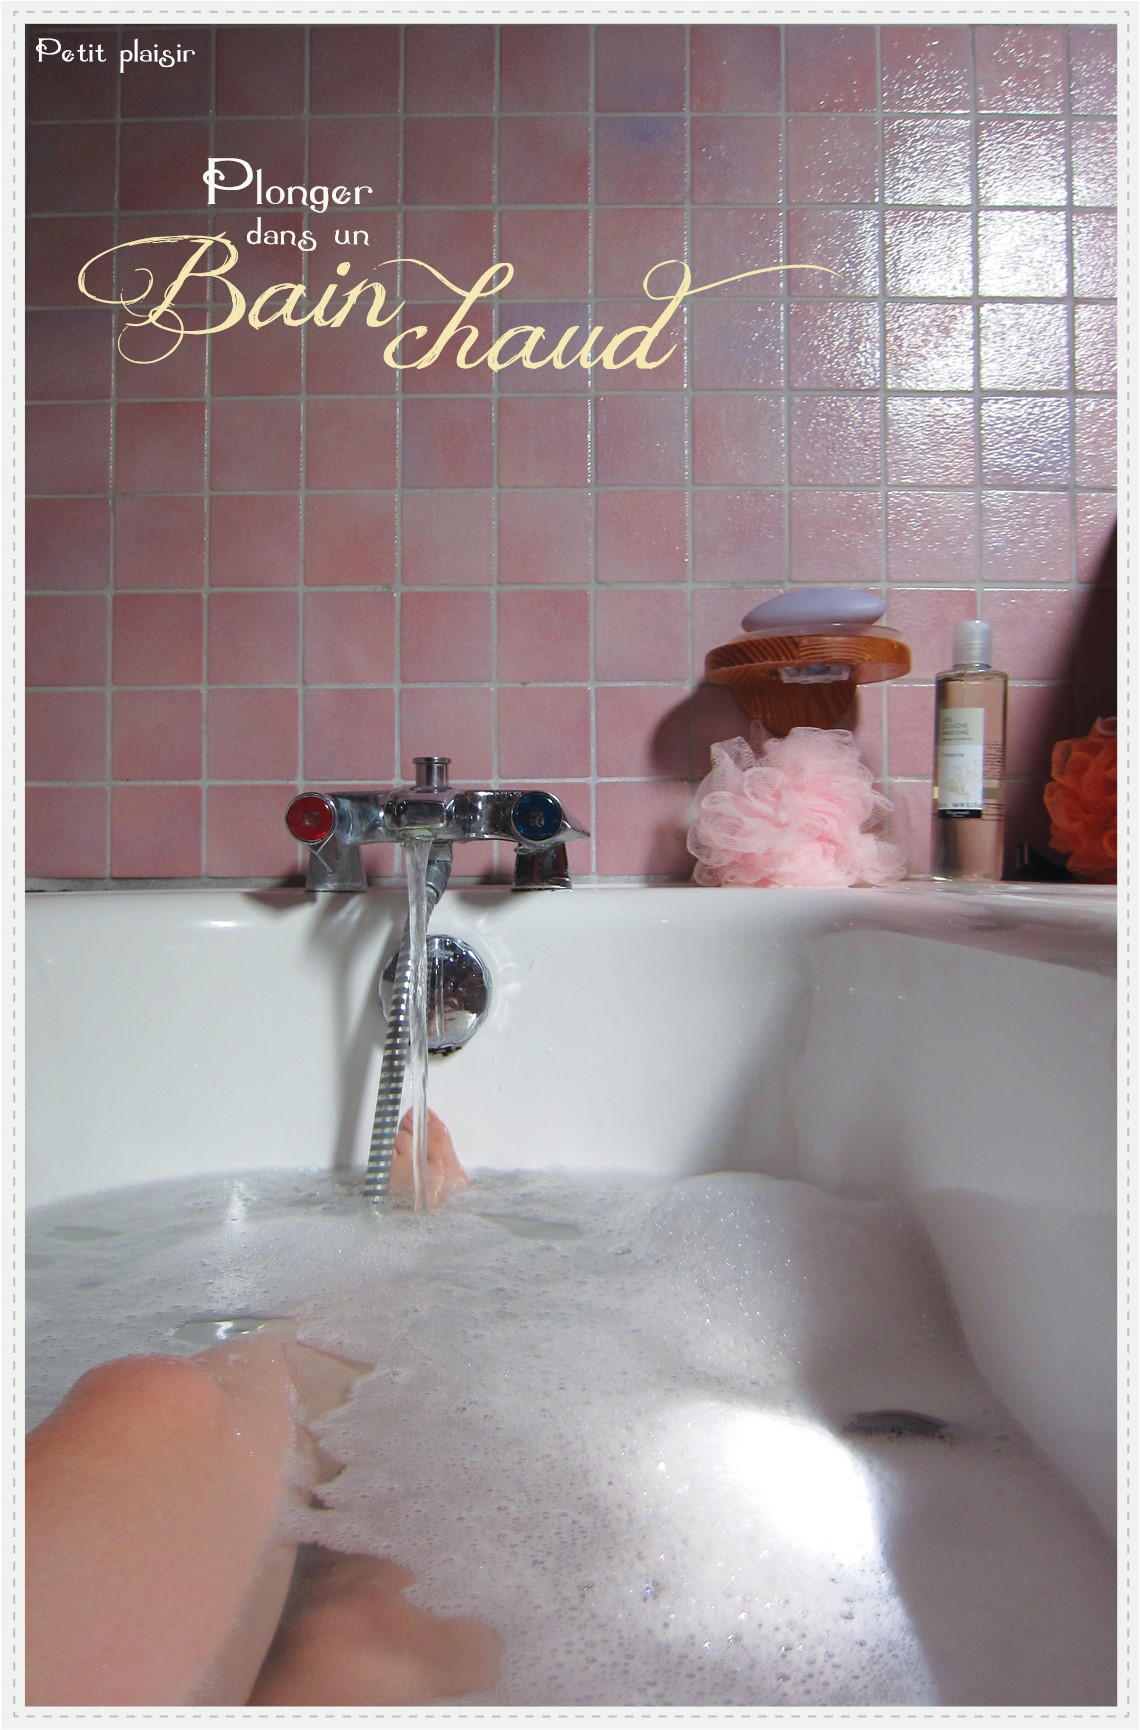 RÃ©sultat de recherche d'images pour "se dÃ©tendre dans un bain chaud"